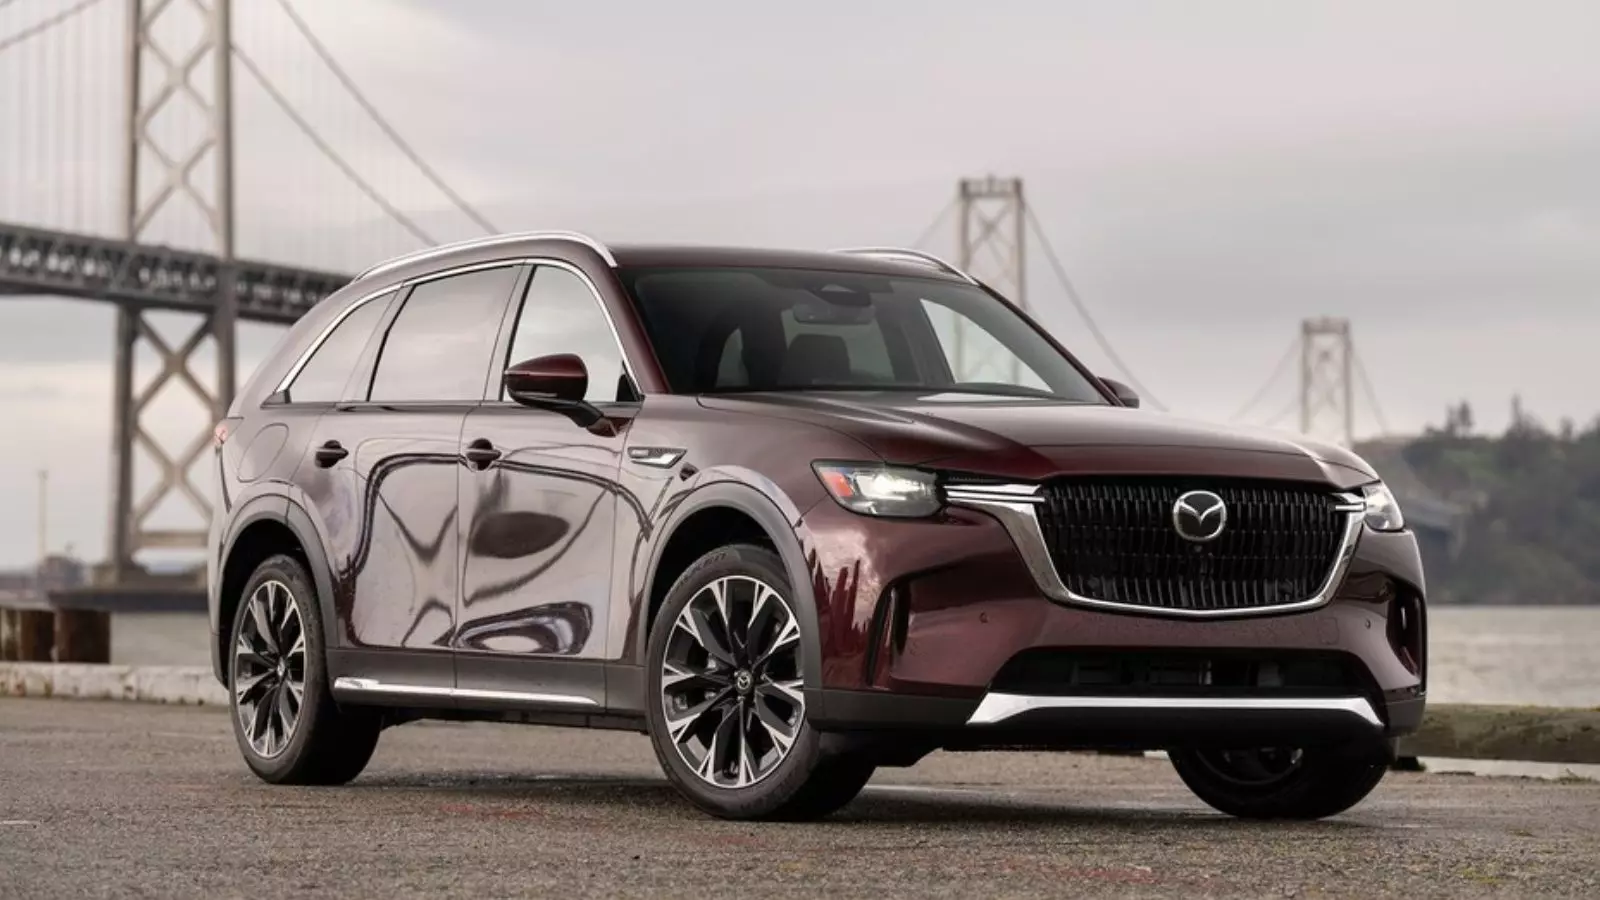 Mazda CX-90: Price, Specs, and Fuel Economy